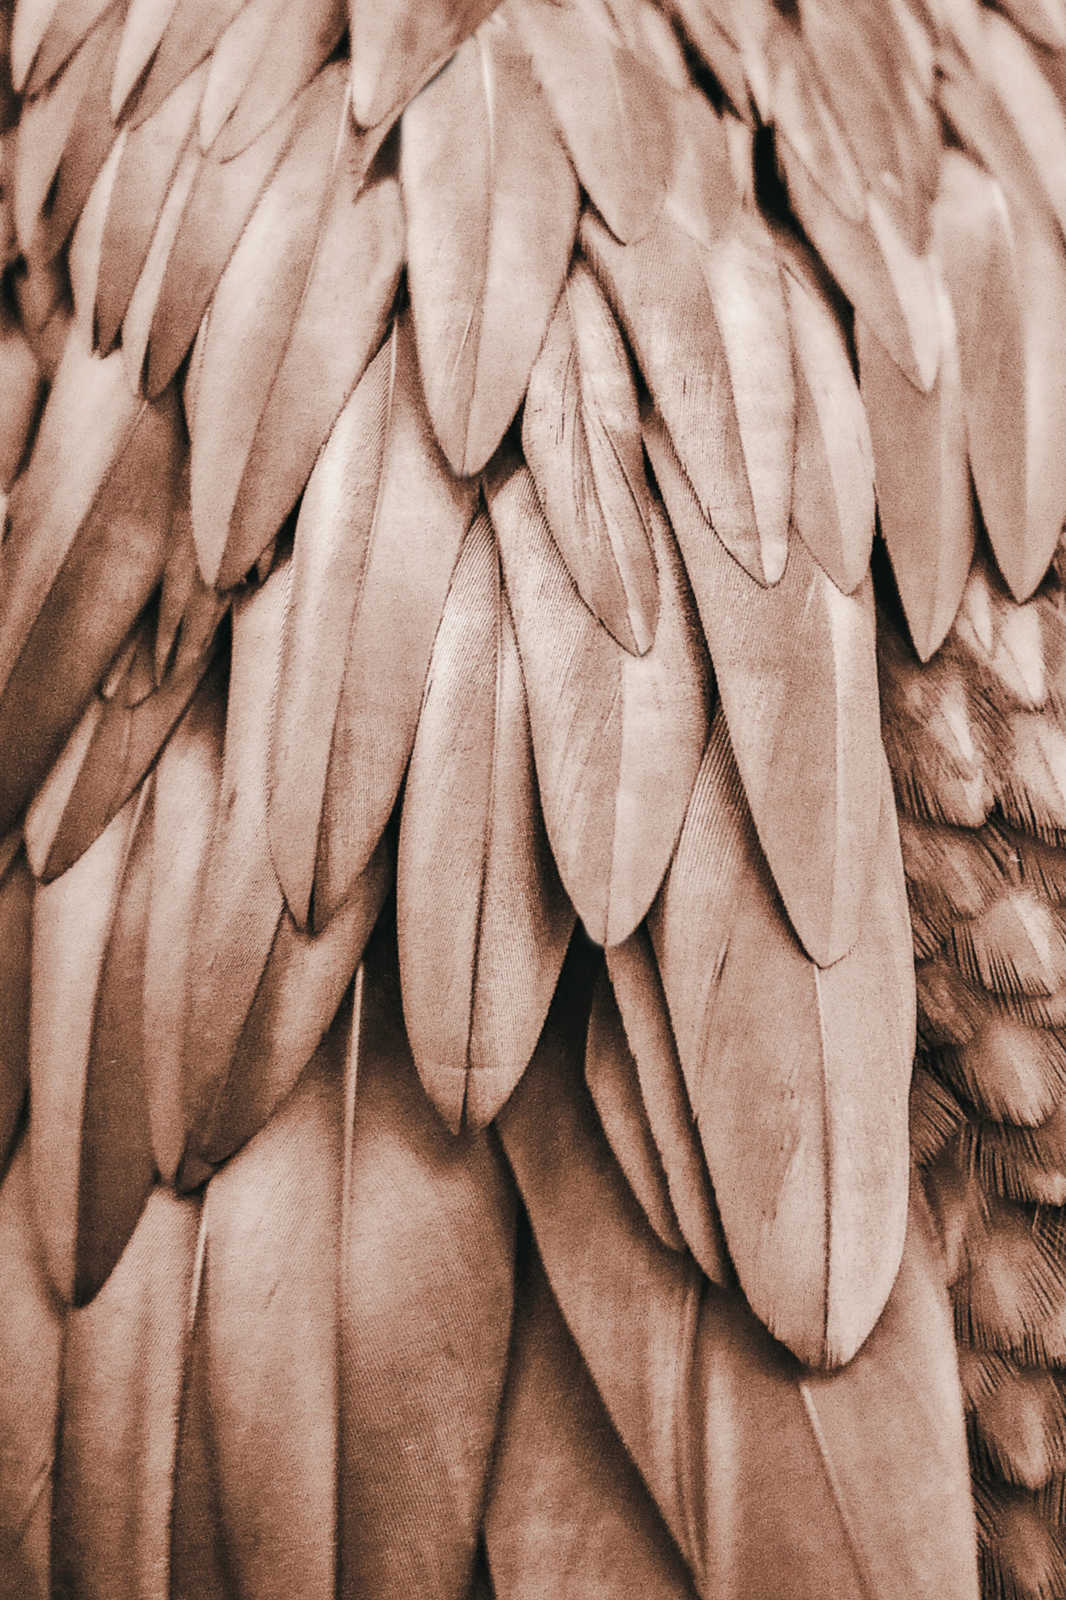             Leinwandbild Feder Flügel in Sepia Braun – 1,20 m x 0,80 m
        